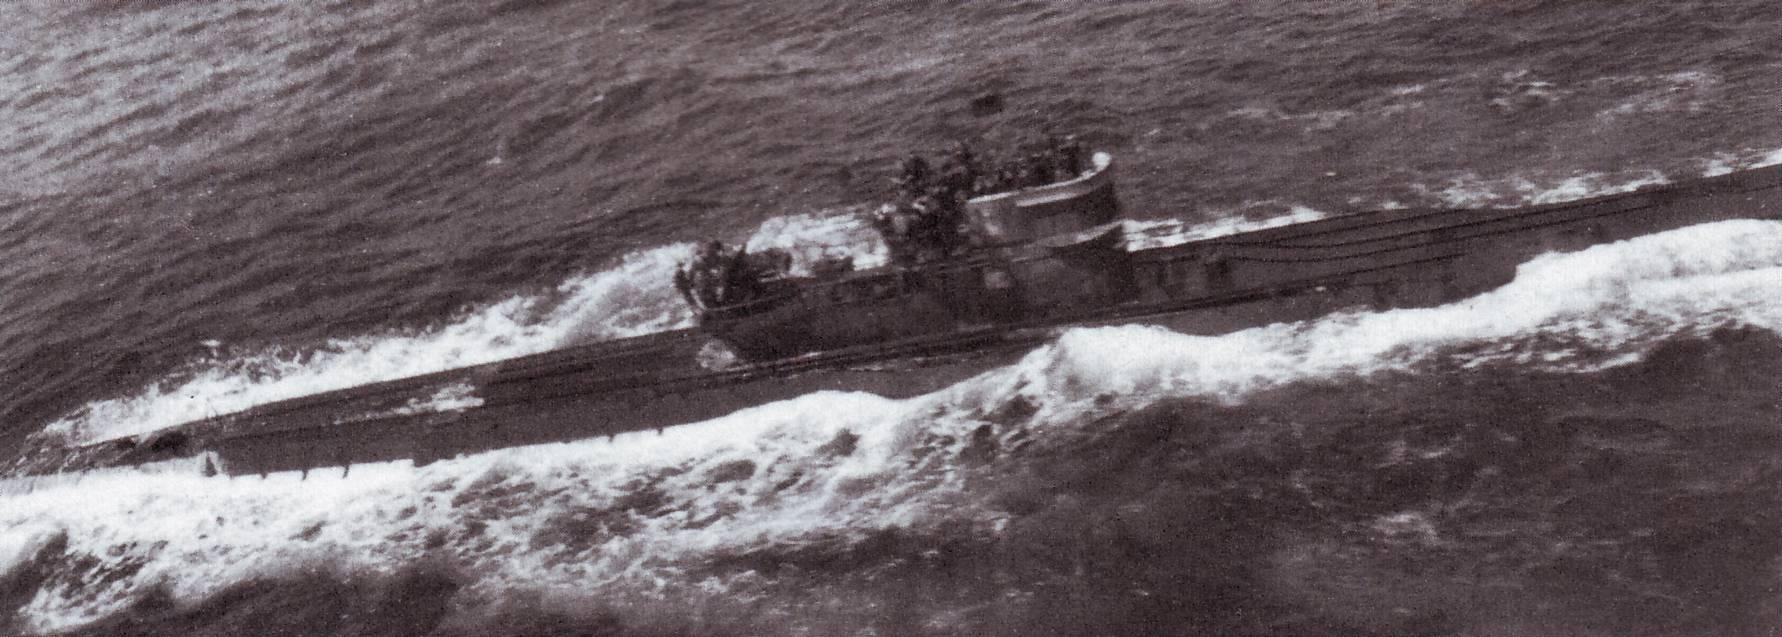 U-516